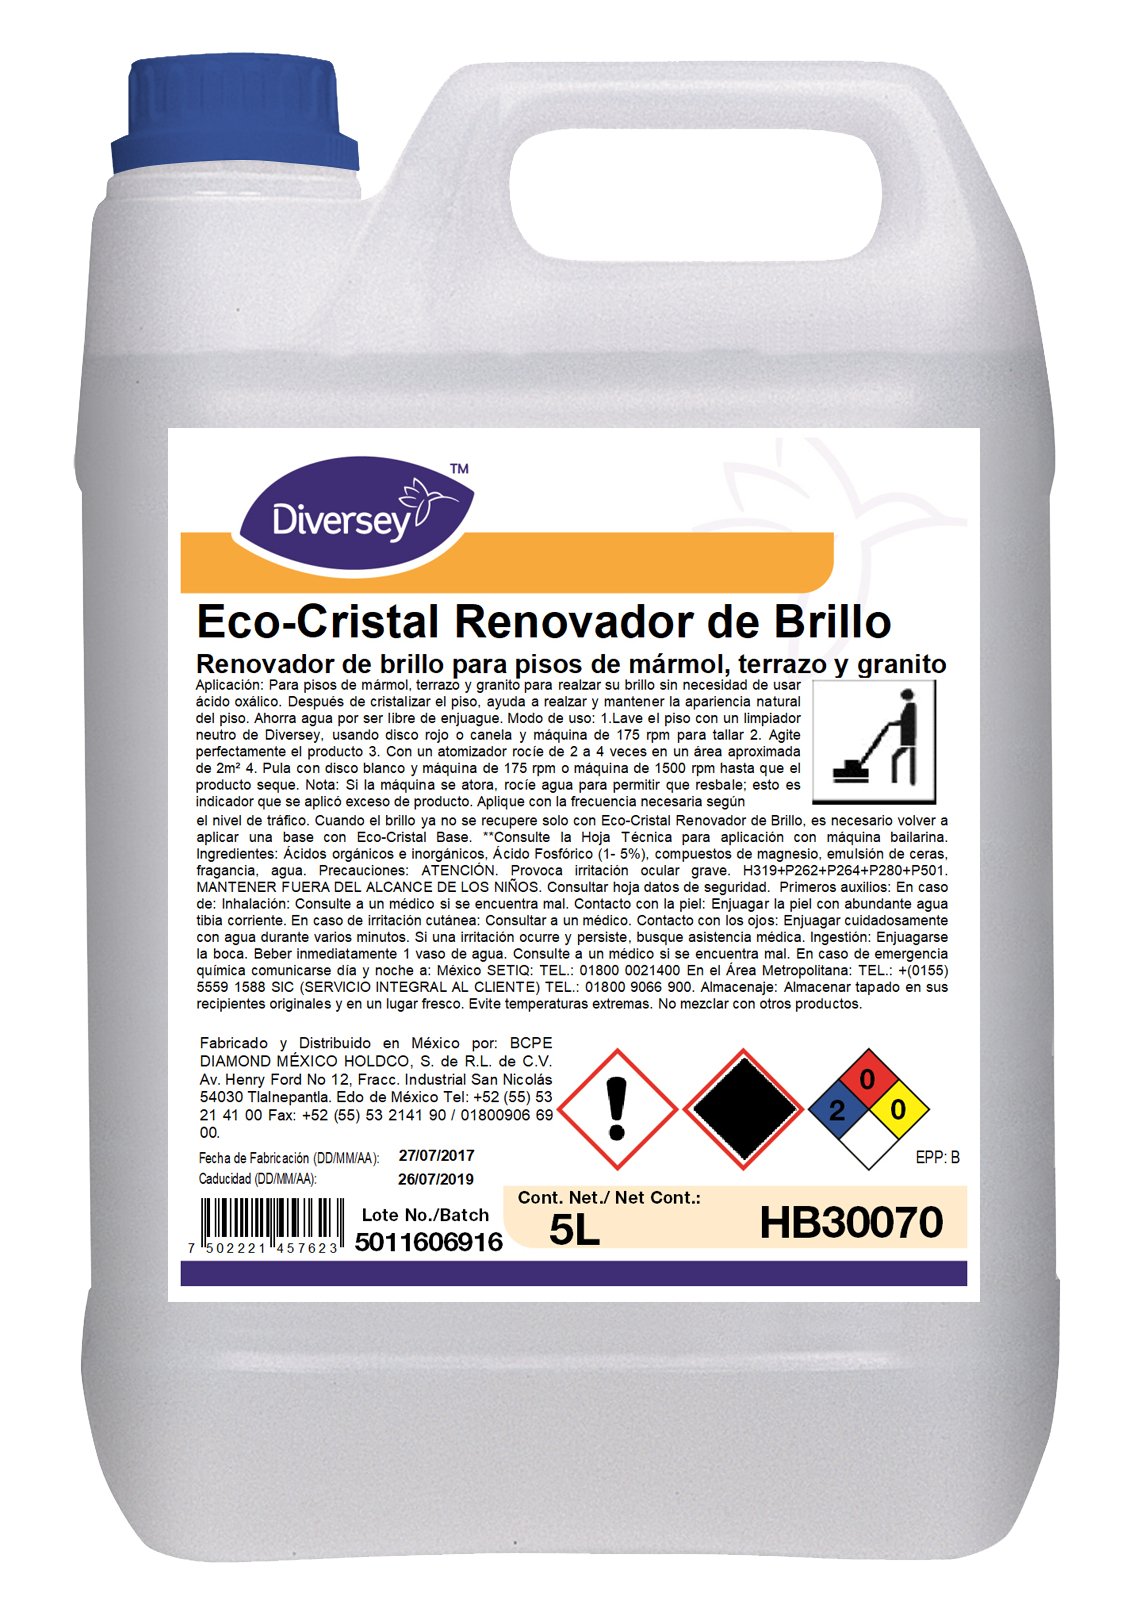 Diversey® Cuidado de Pisos Eco-Cristal Renovador (HB30070 - HB30097) - Karlan ¡Marca la Limpieza!HB30070